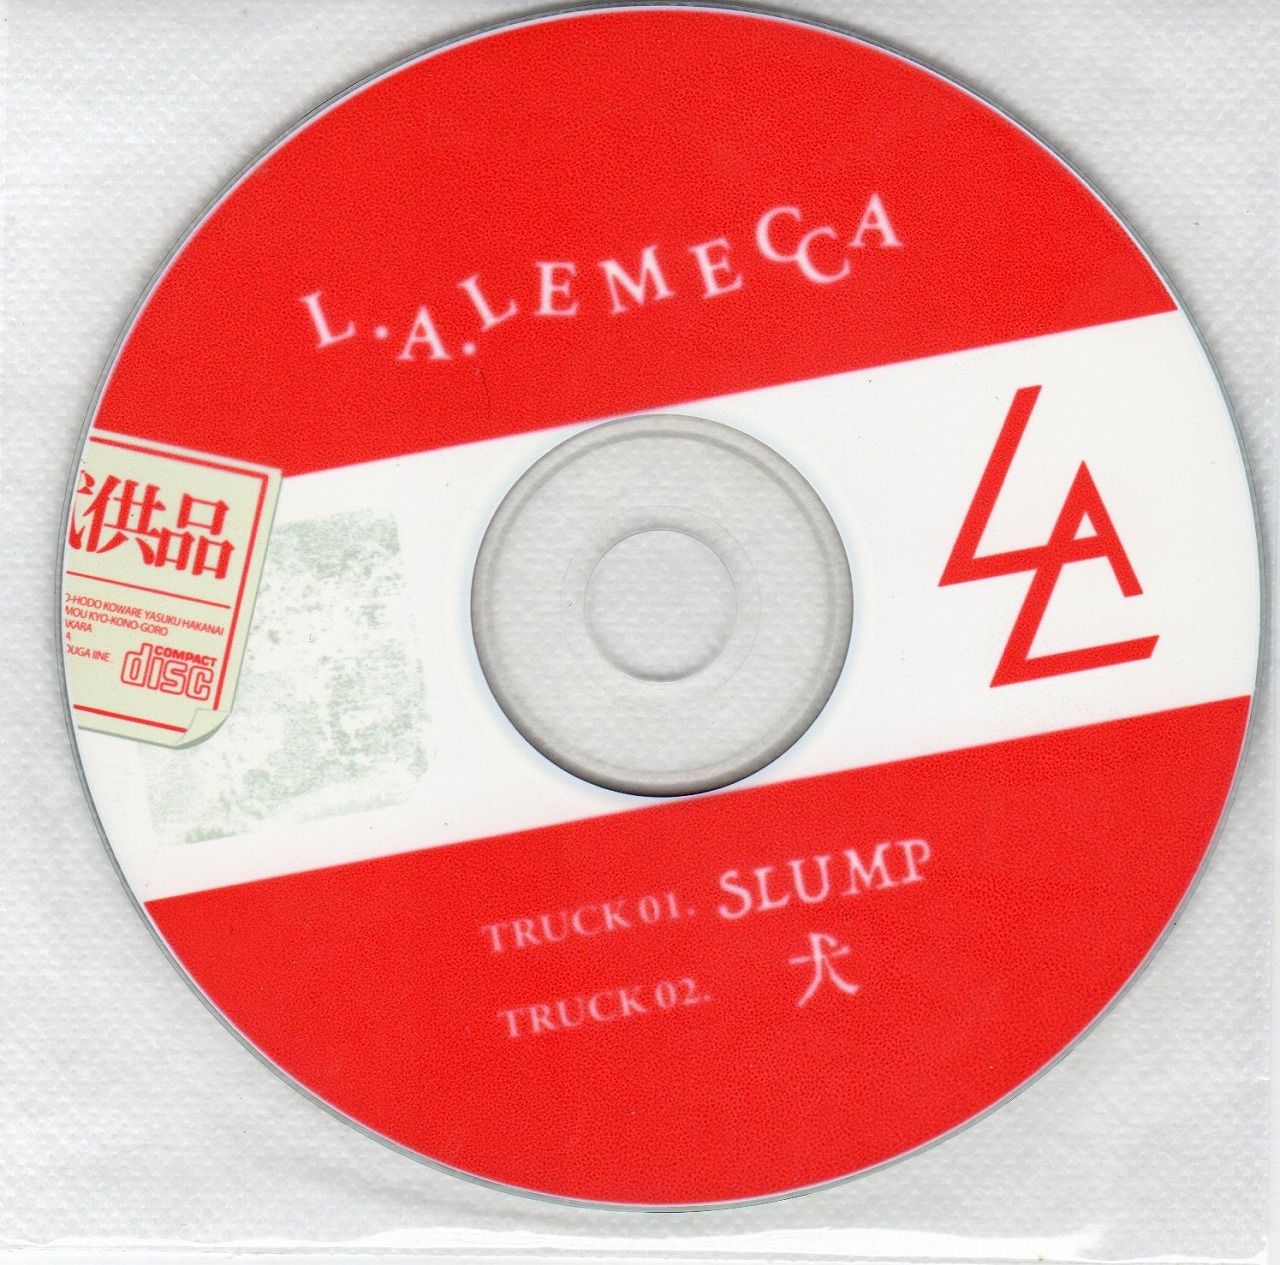 エルエーレメッカ の CD 試供品